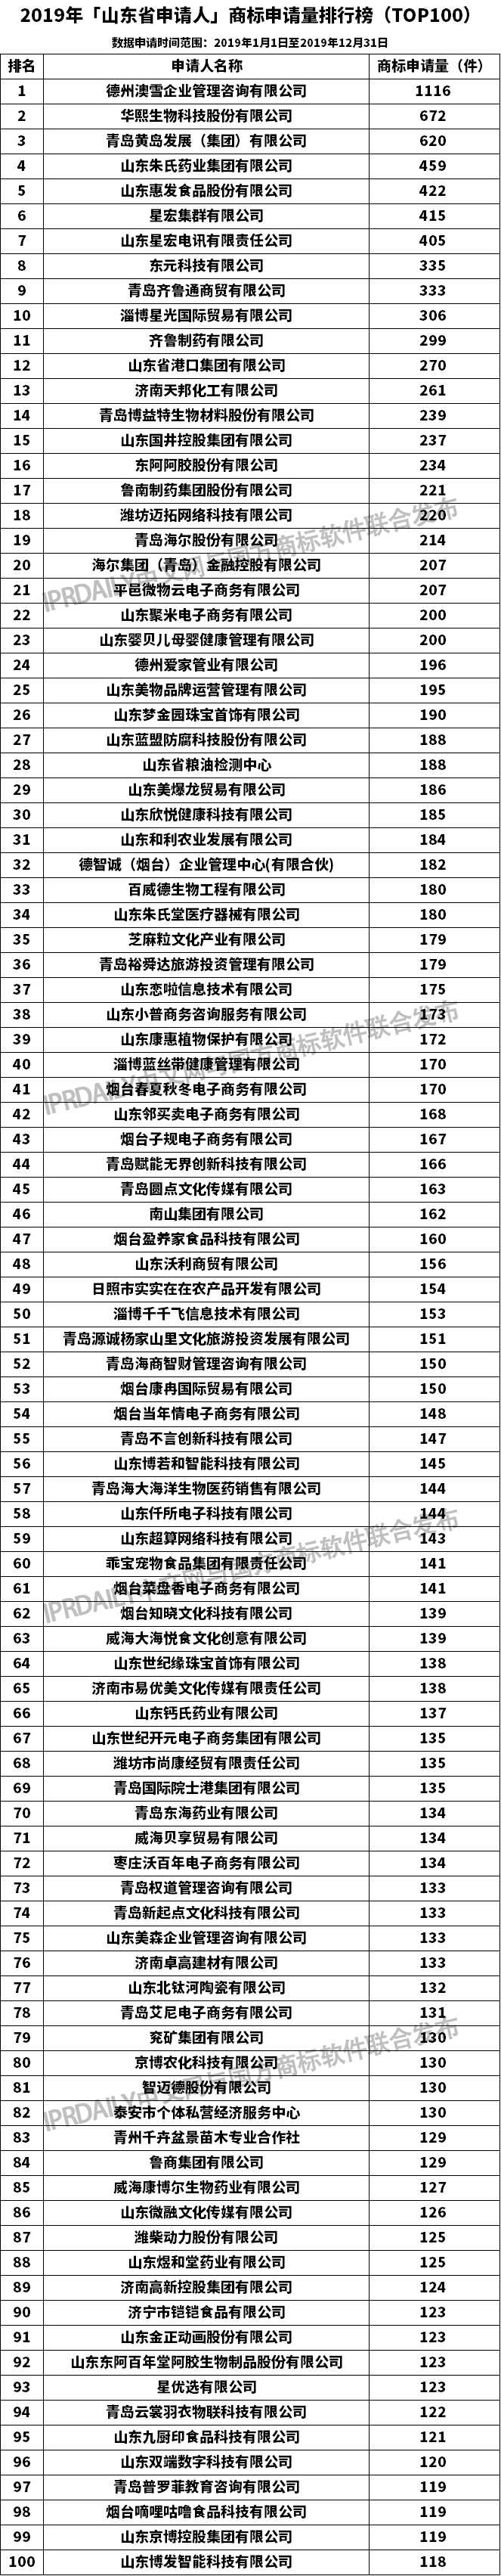 2019年「山东省申请人」商标申请量排行榜（TOP100）